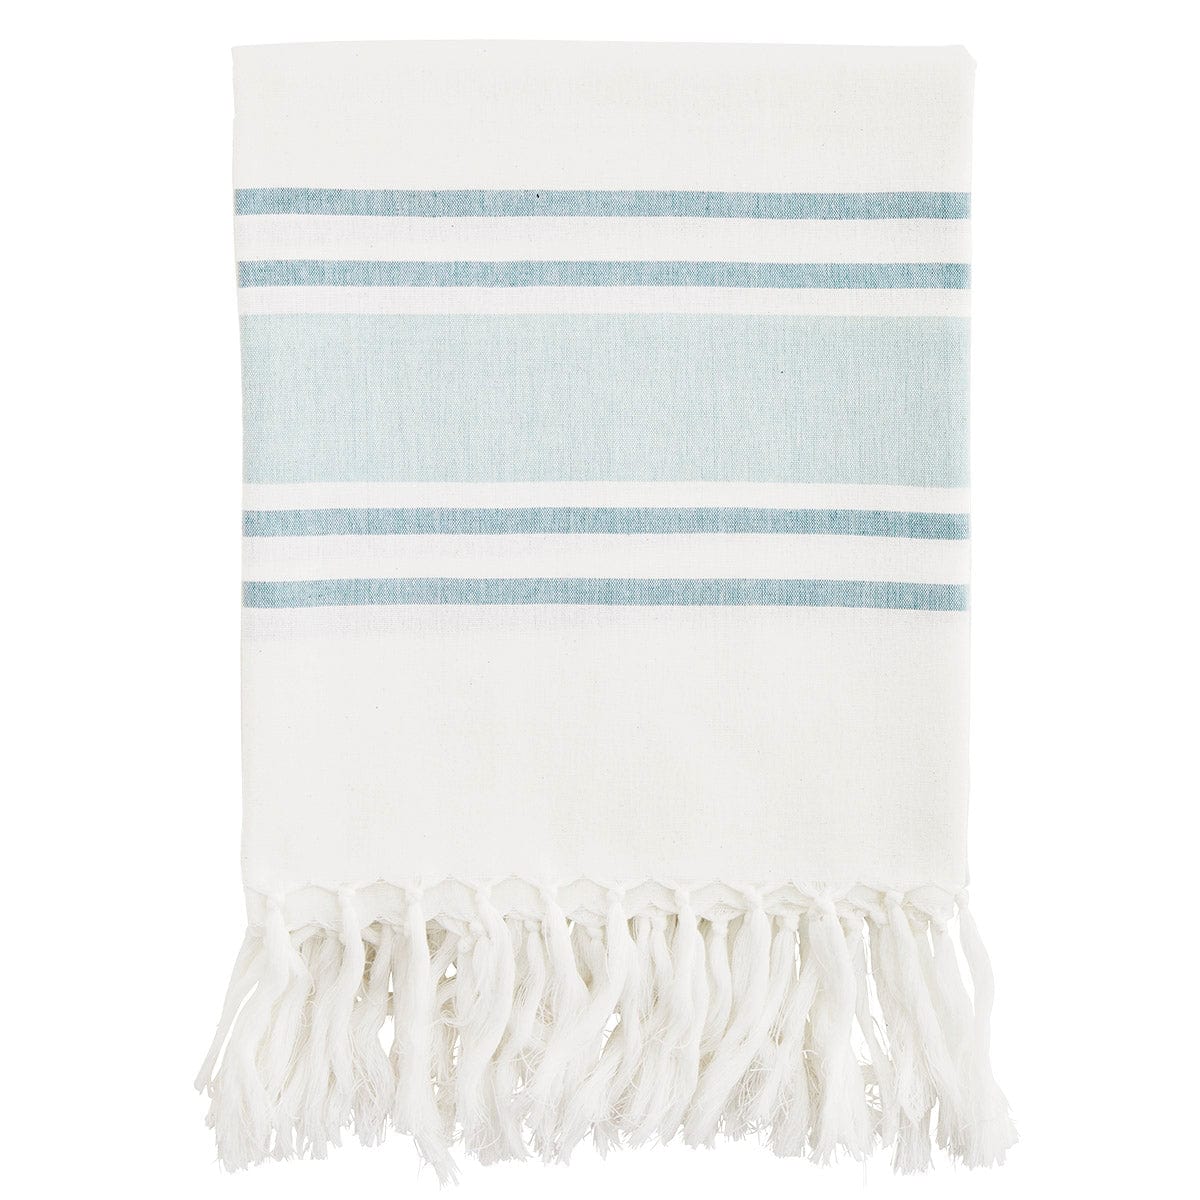 Deilig bomullshåndkle med frynser. Hamam håndklær tørker raskt, tar liten plass og er perfekt i strandvesken eller piknik kurven. Dette i off-white og mint.